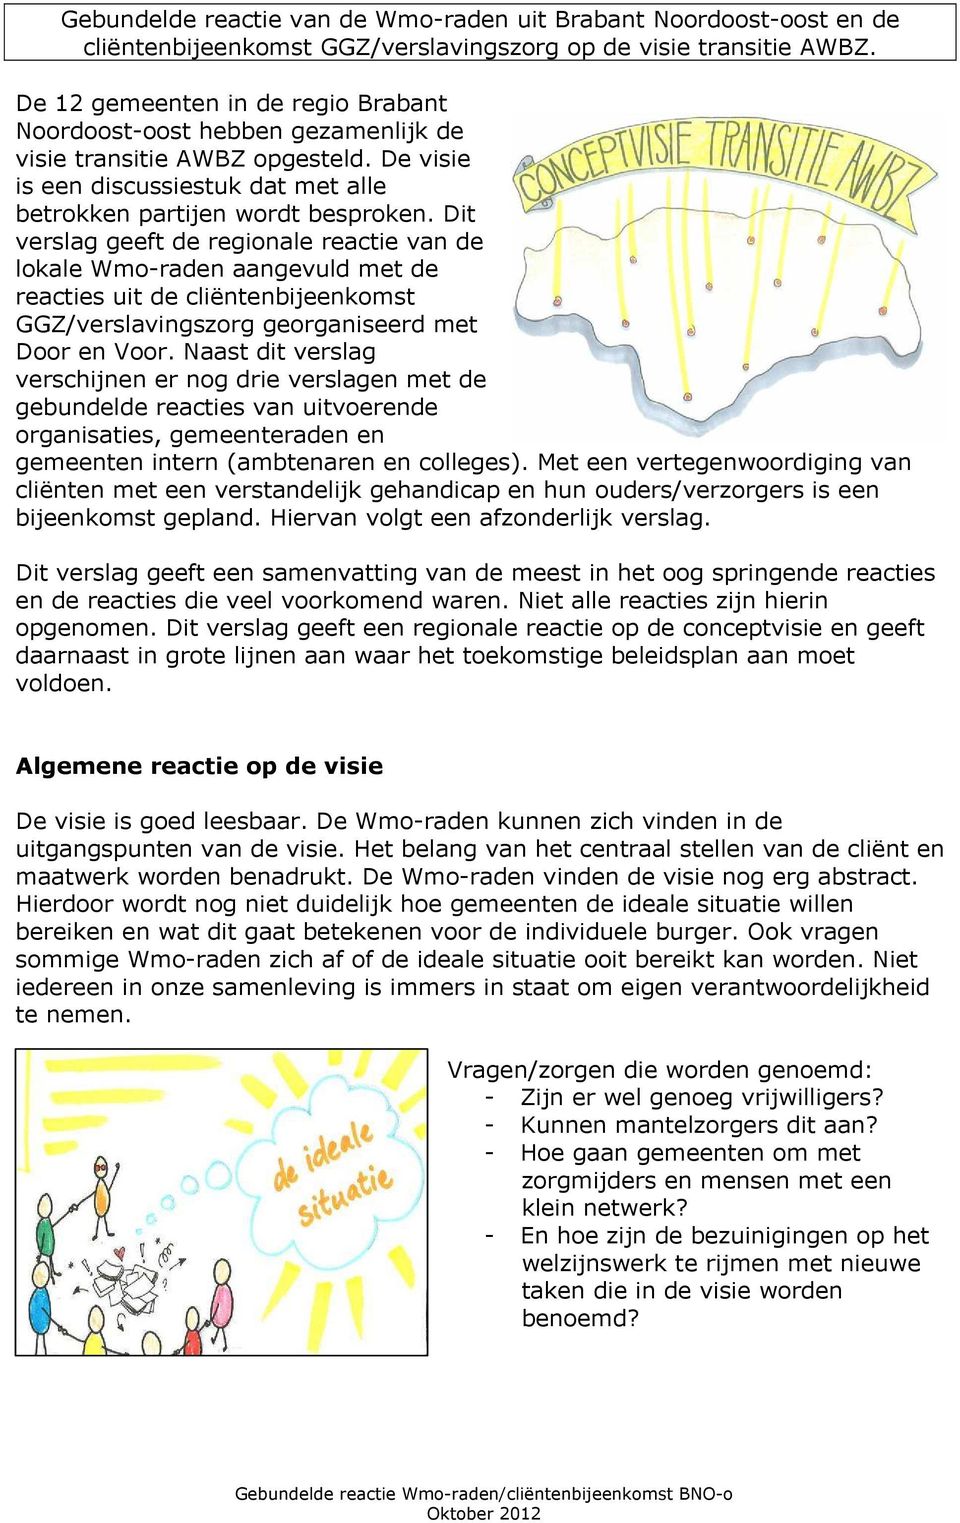 Dit verslag geeft de regionale reactie van de lokale Wmo-raden aangevuld met de reacties uit de cliëntenbijeenkomst GGZ/verslavingszorg georganiseerd met Door en Voor.